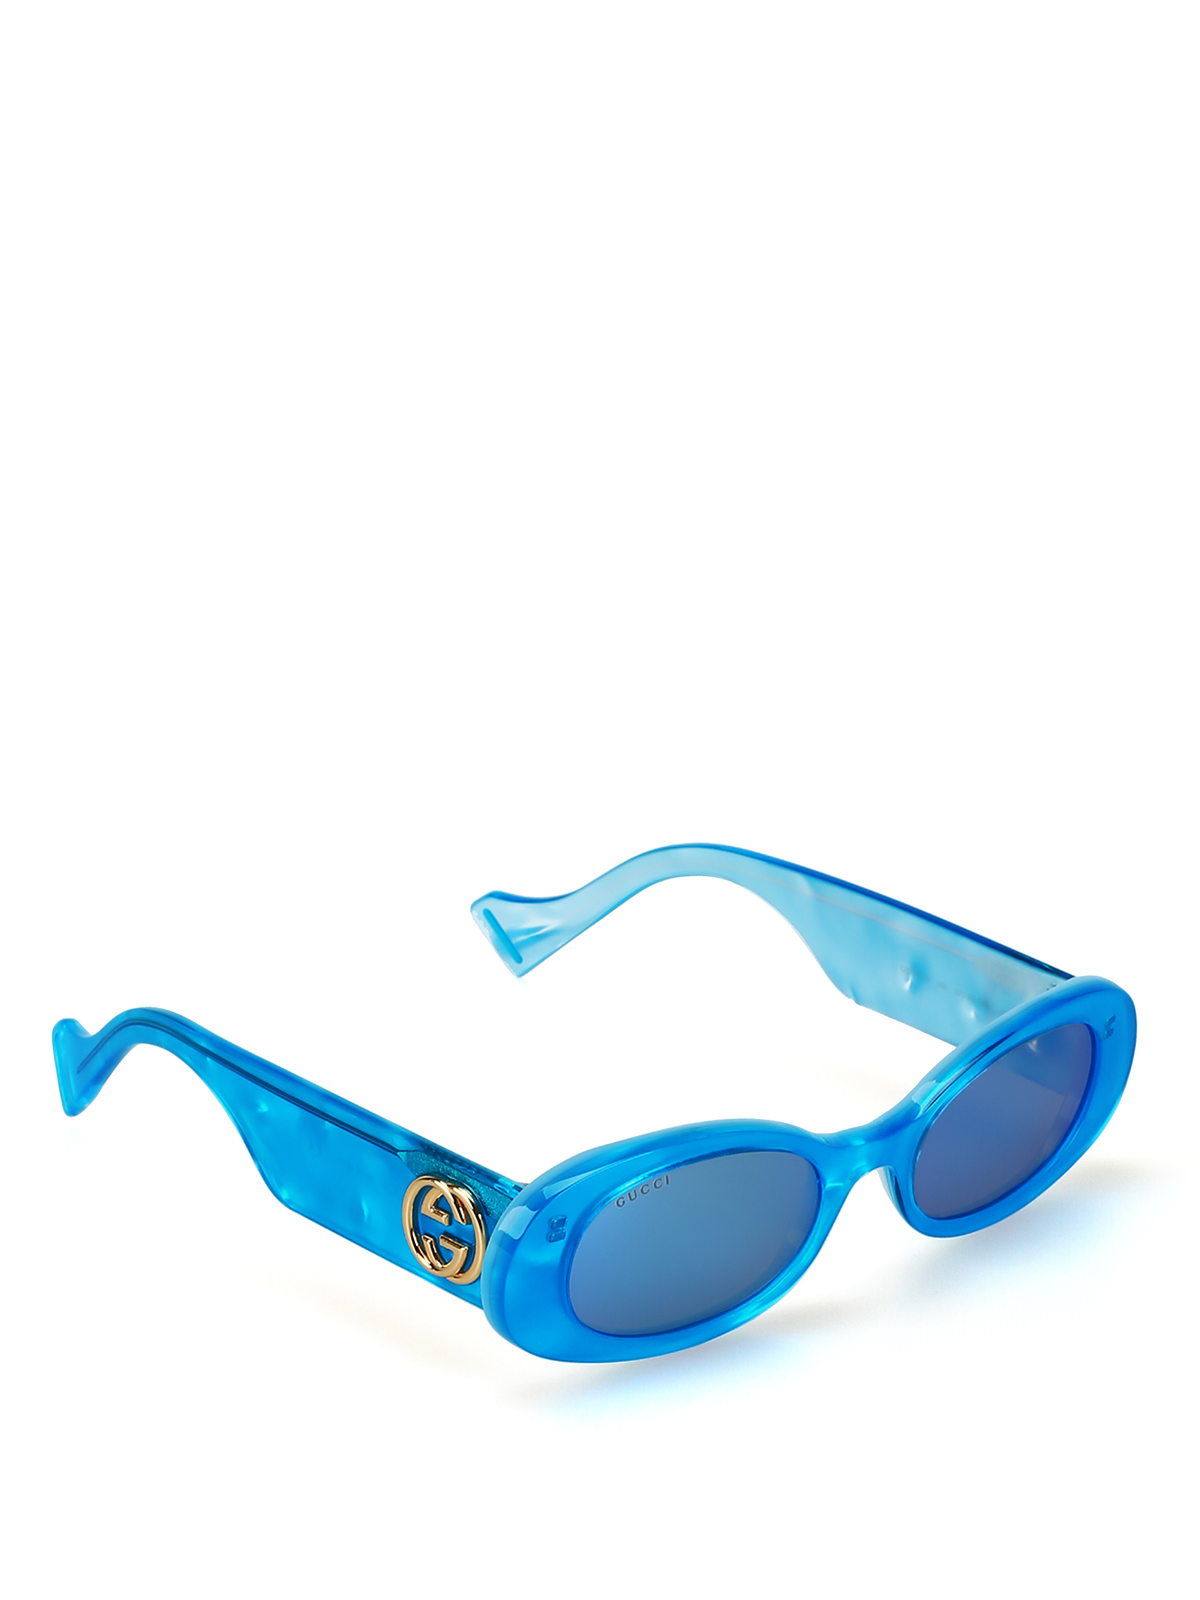 blue gucci sunglasses